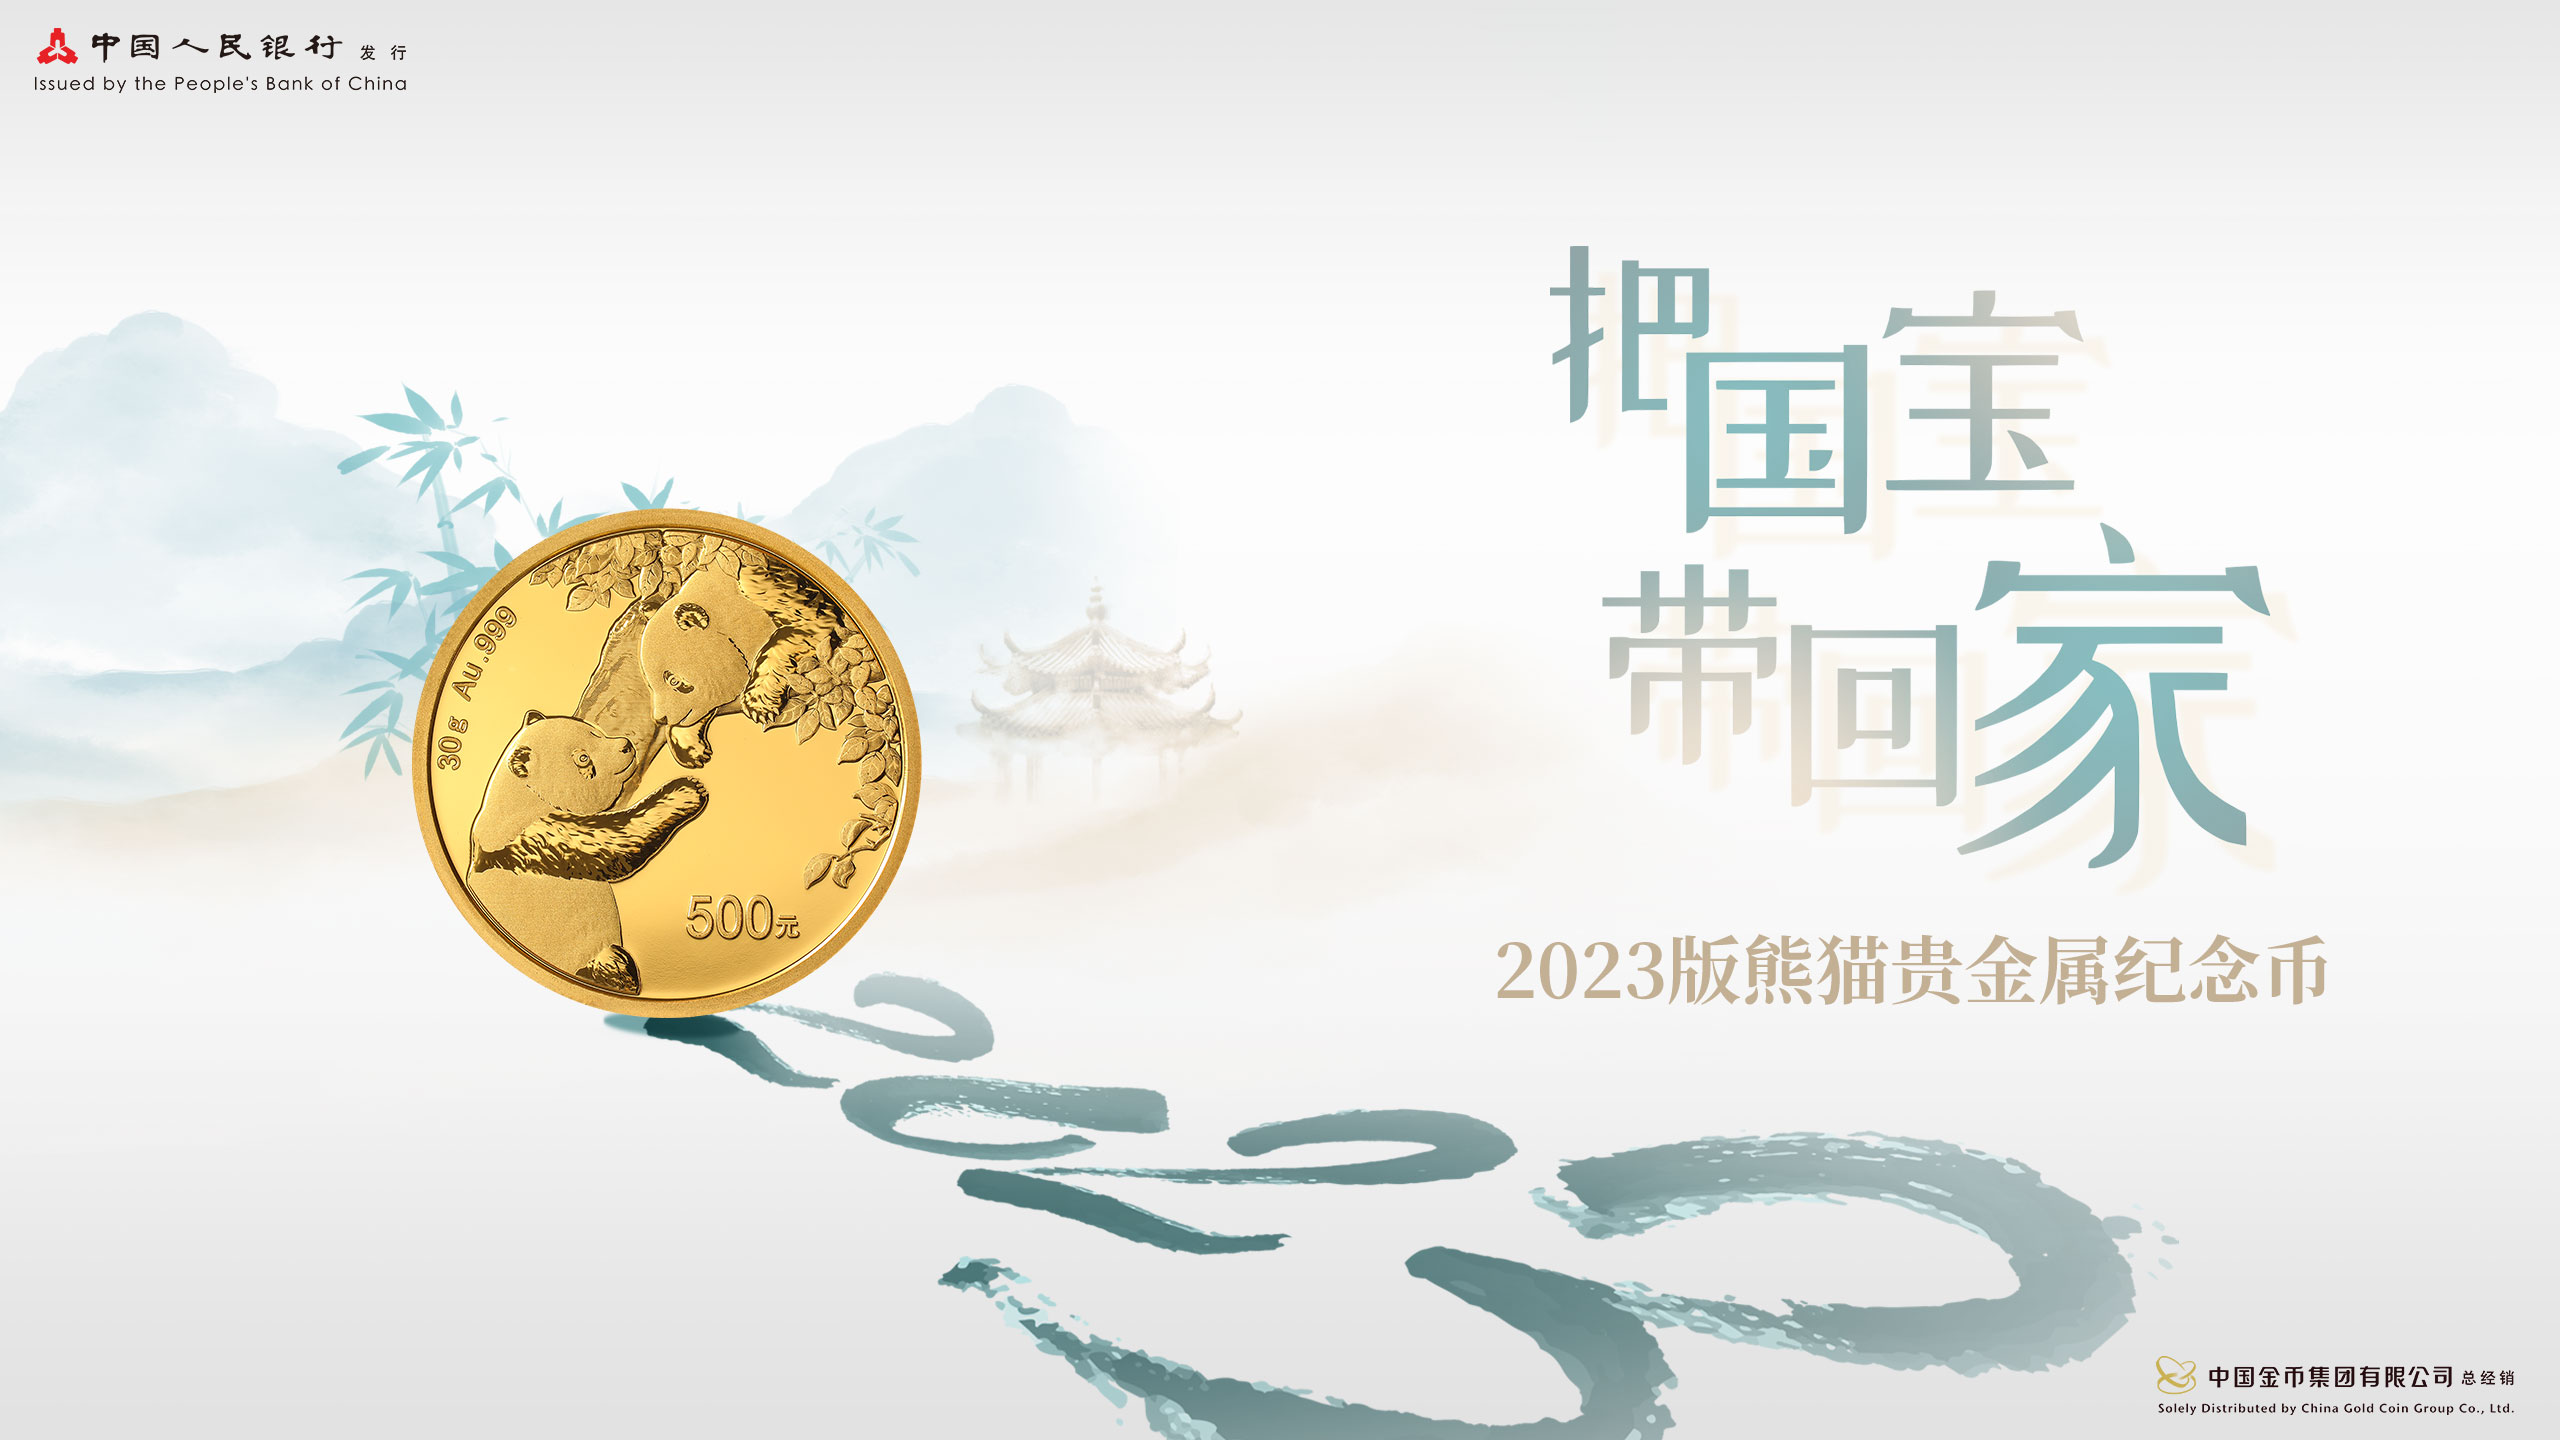 4. 2023版熊猫贵金属纪念币宣传片.jpg